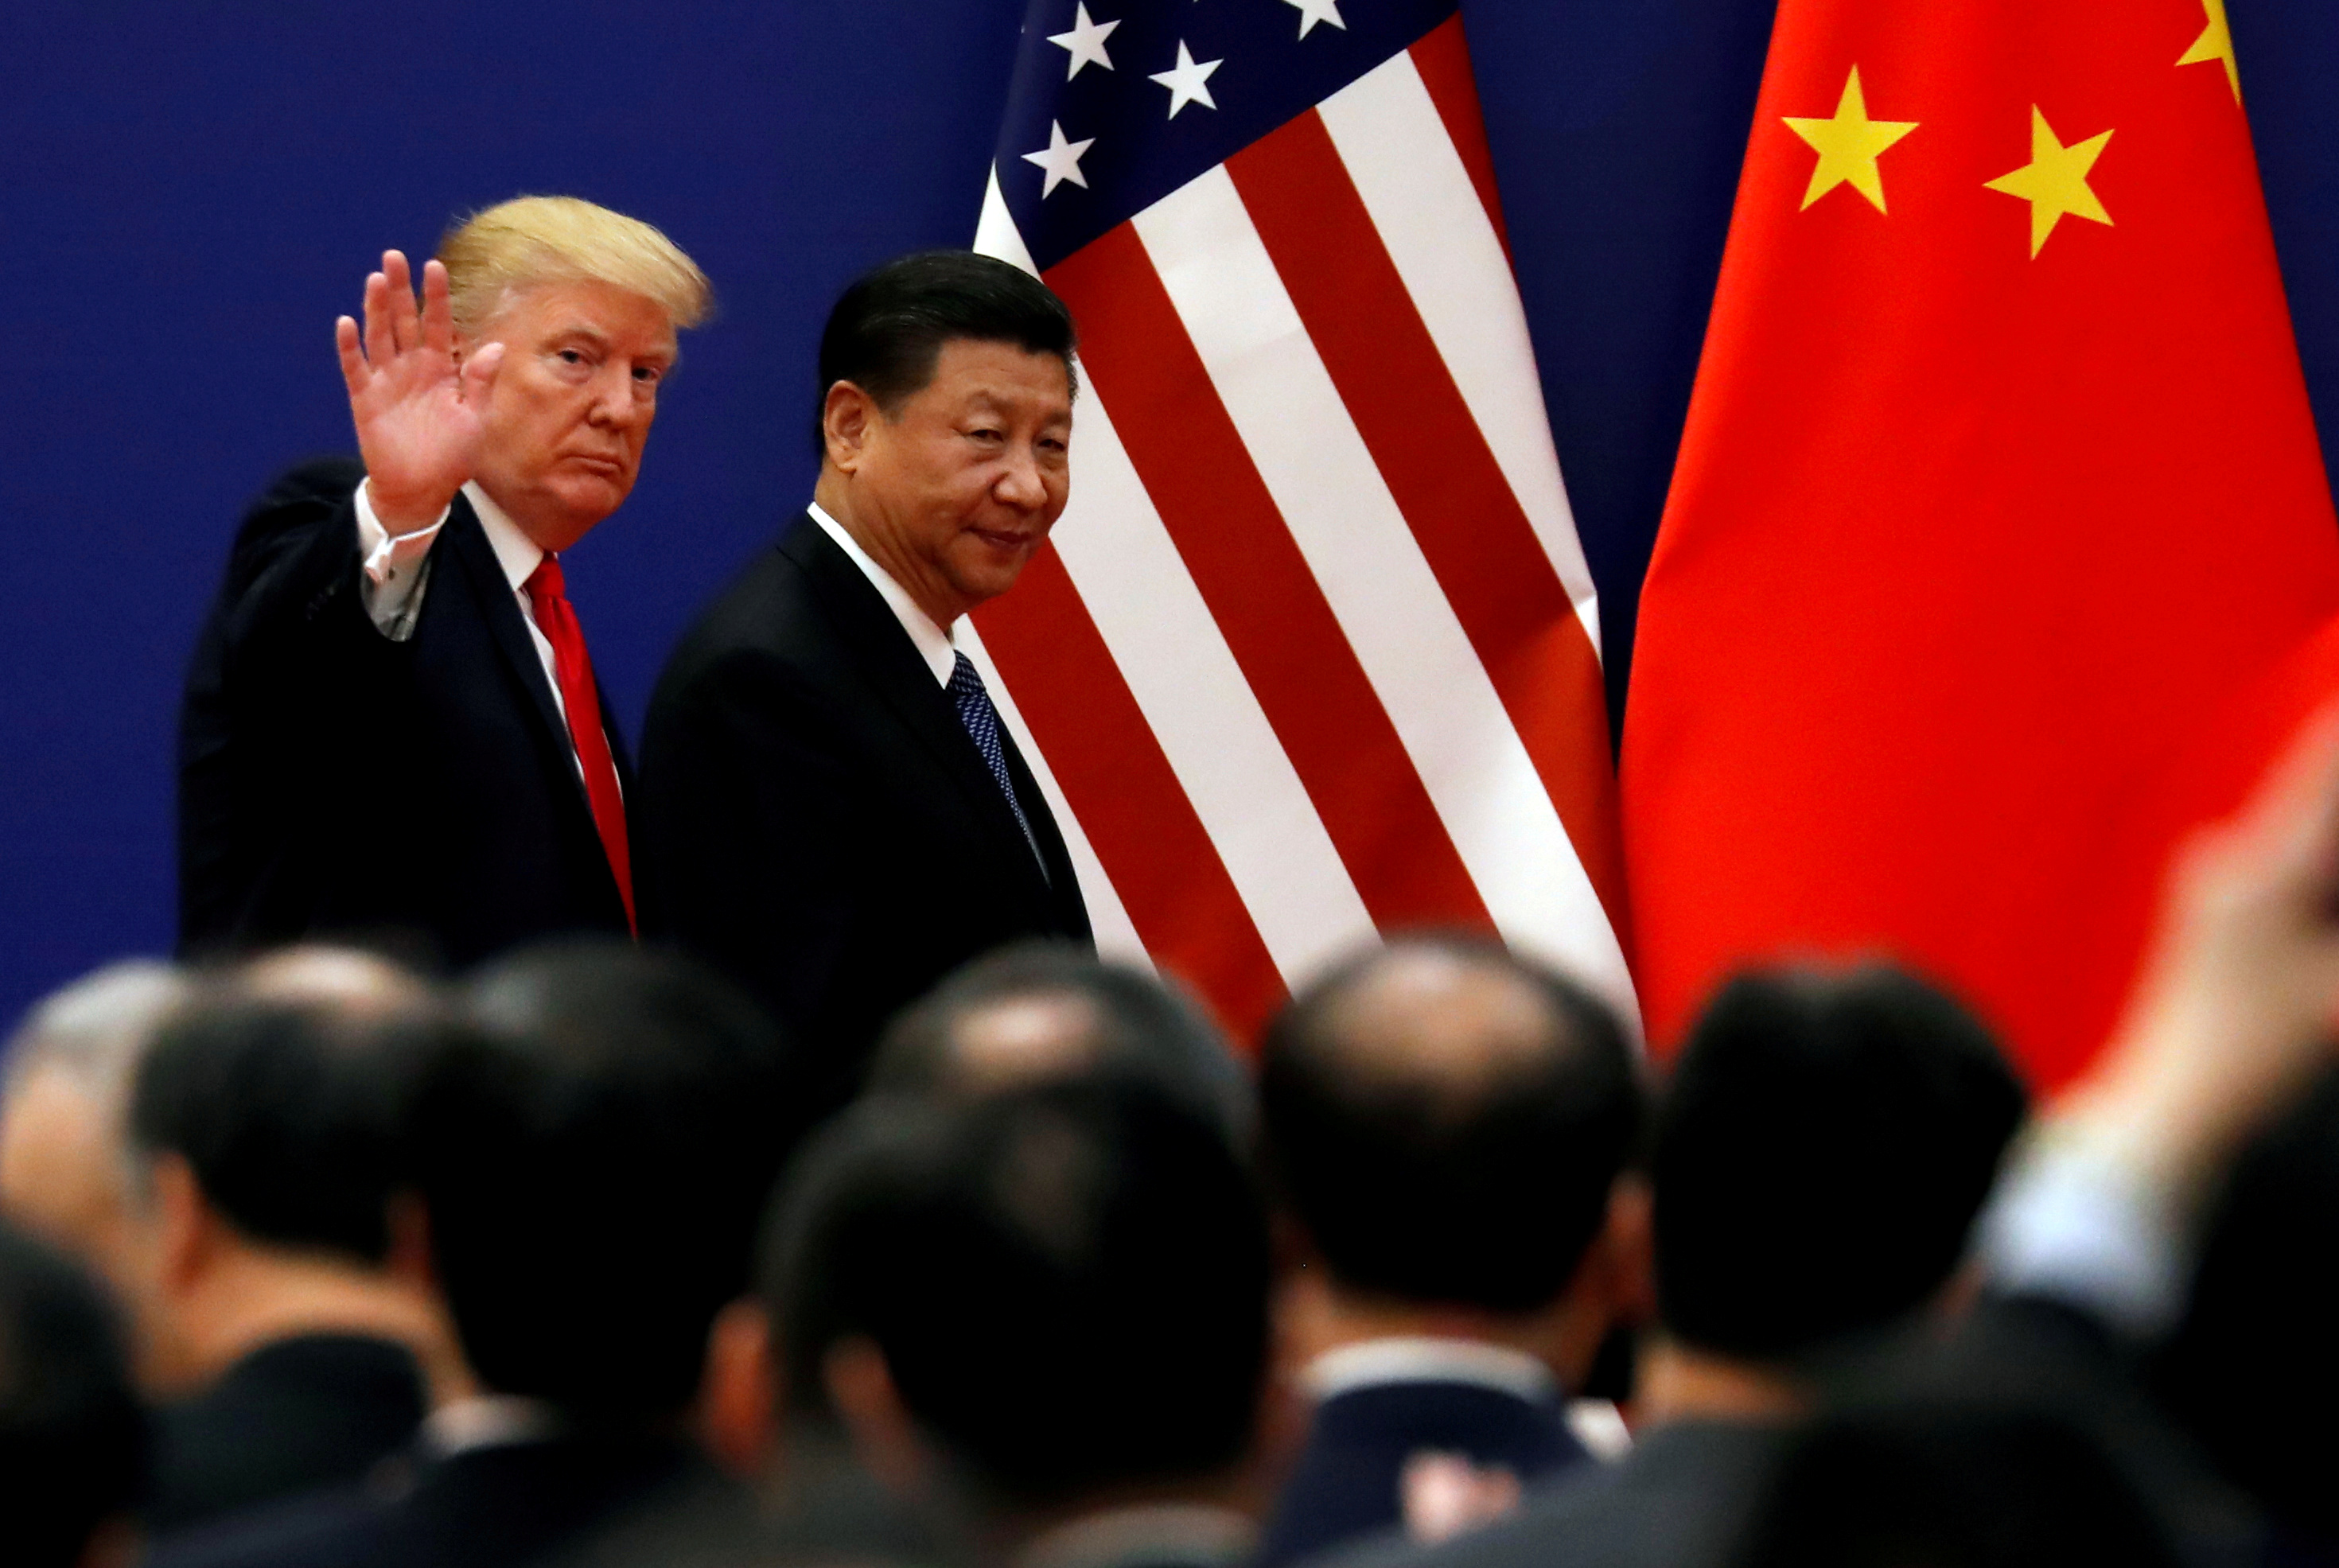 El mercado cree que Trump solo ampliará el acuerdo con China si cae en las encuestas